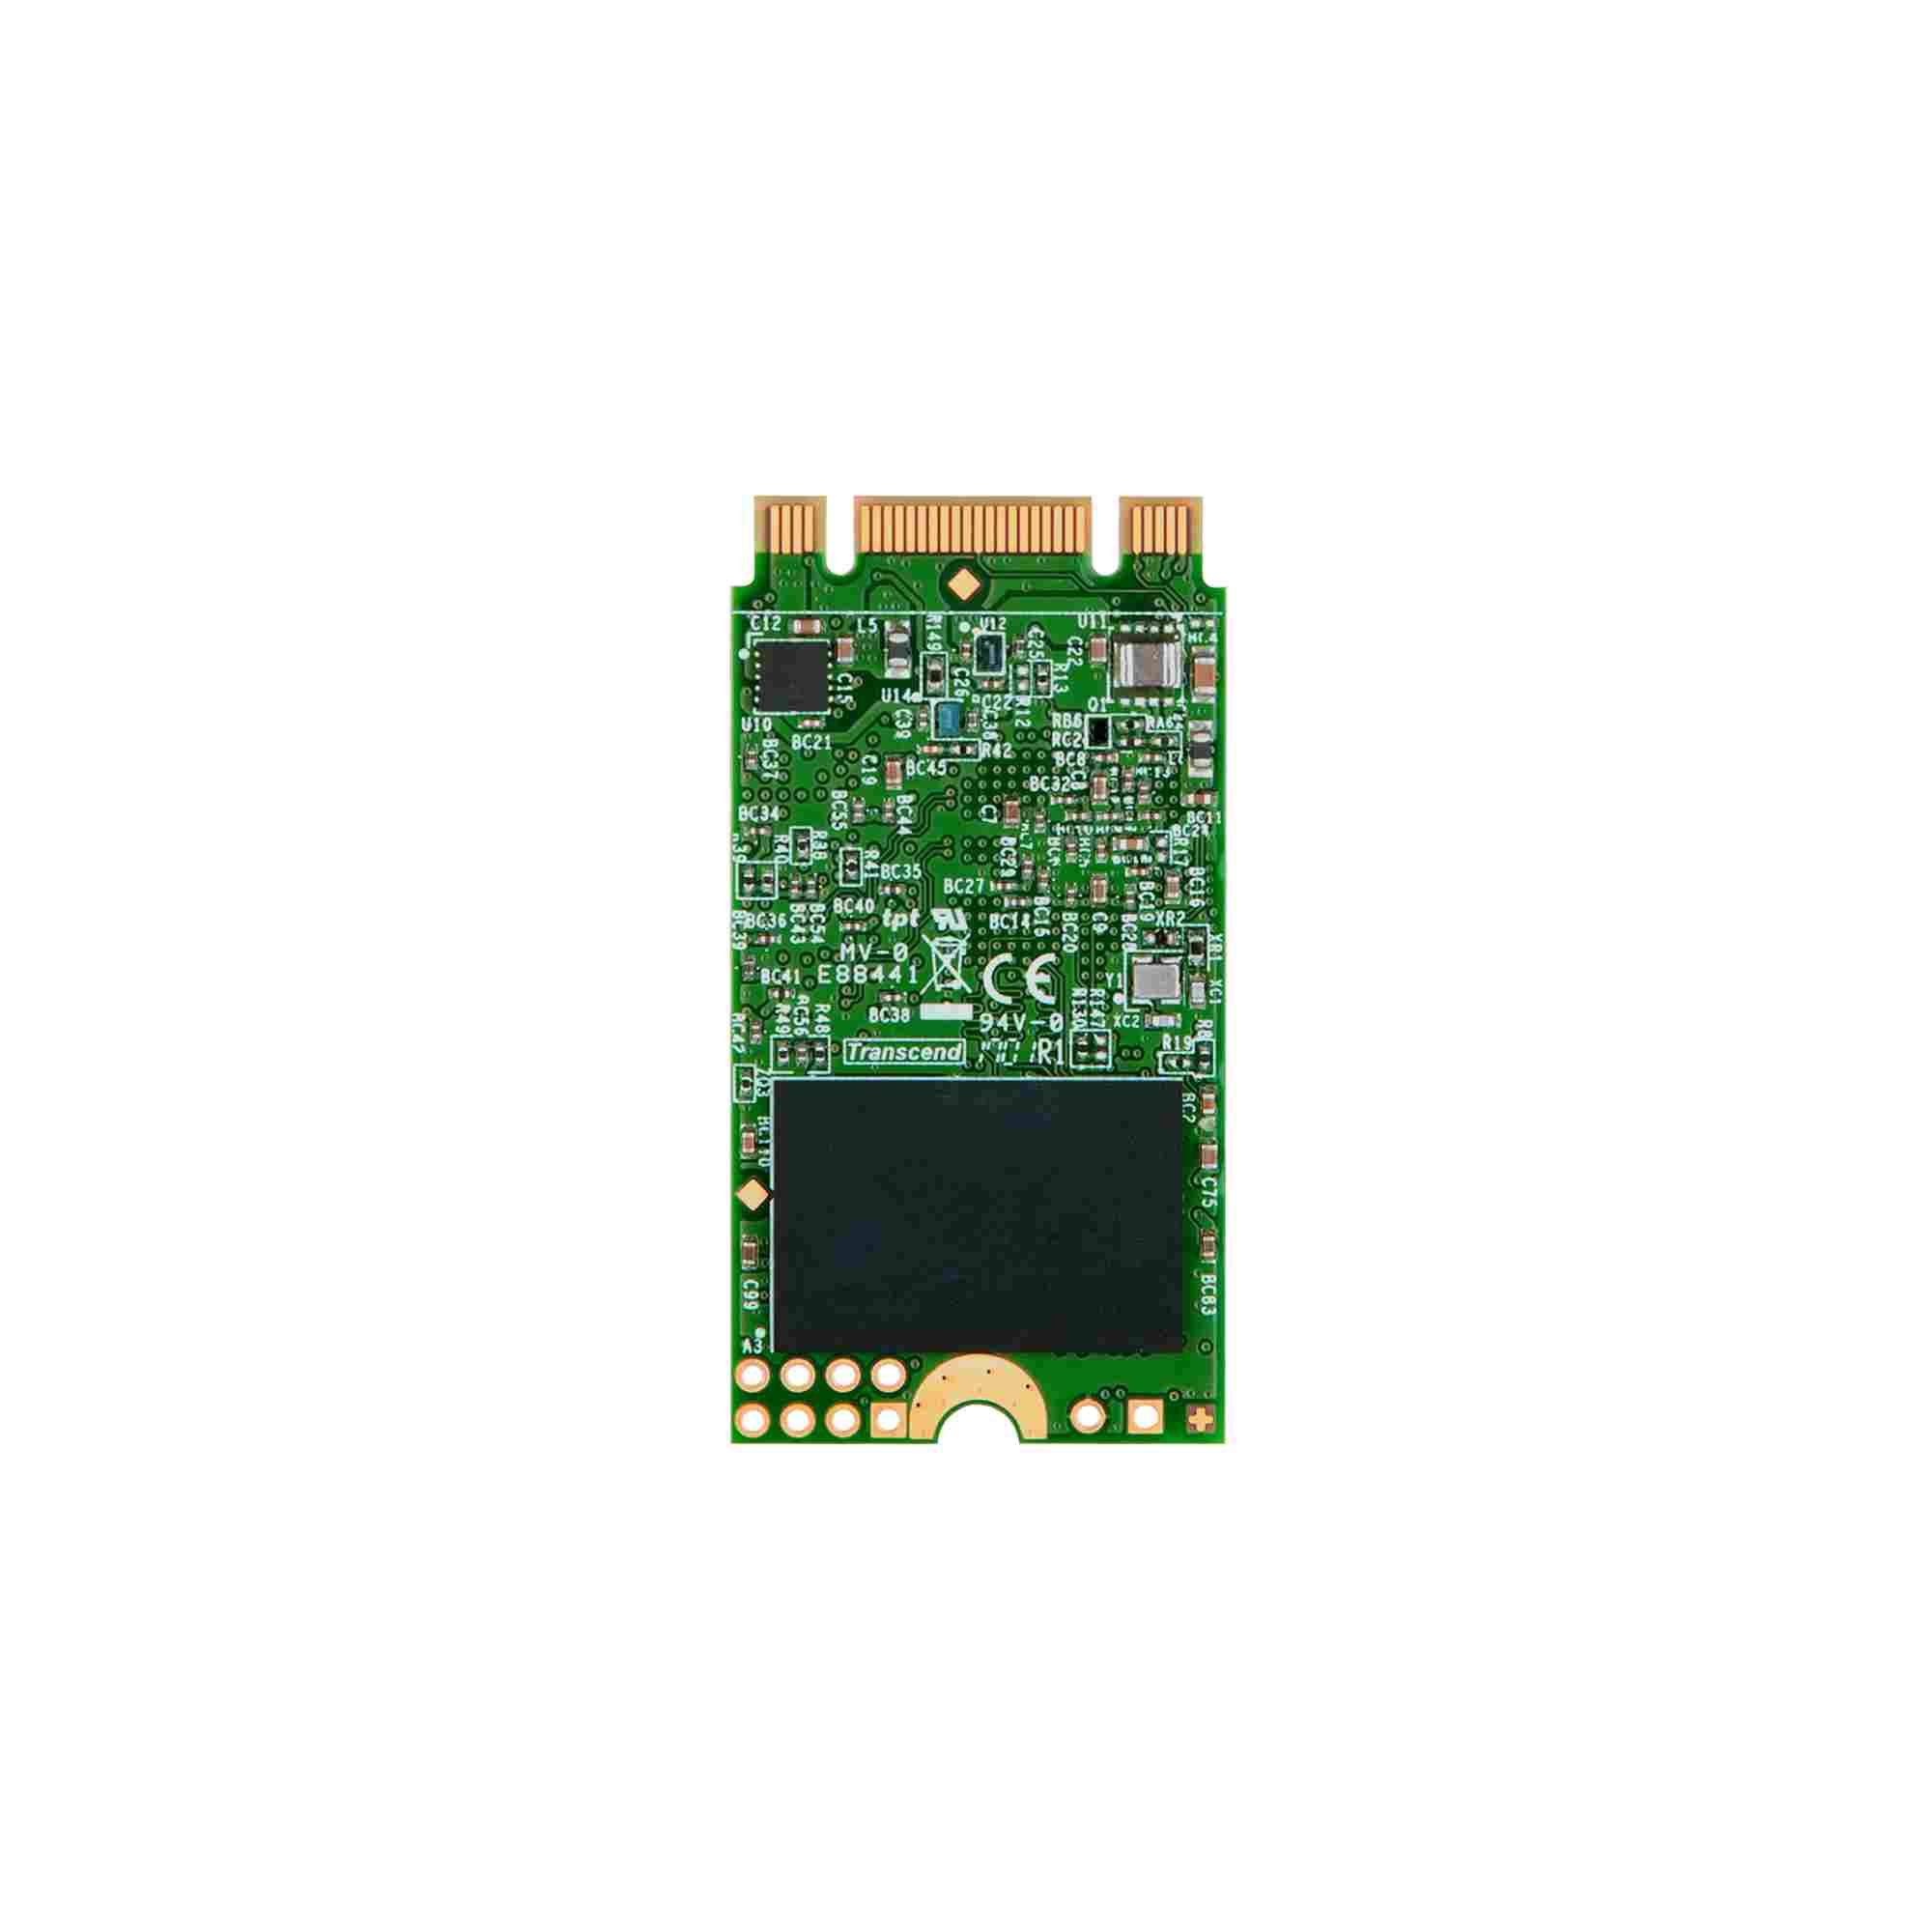 TRANSCEND Industrial SSD MTS420 240GB, M.2 2242, SATA III 6 Gb/s, TLC1 